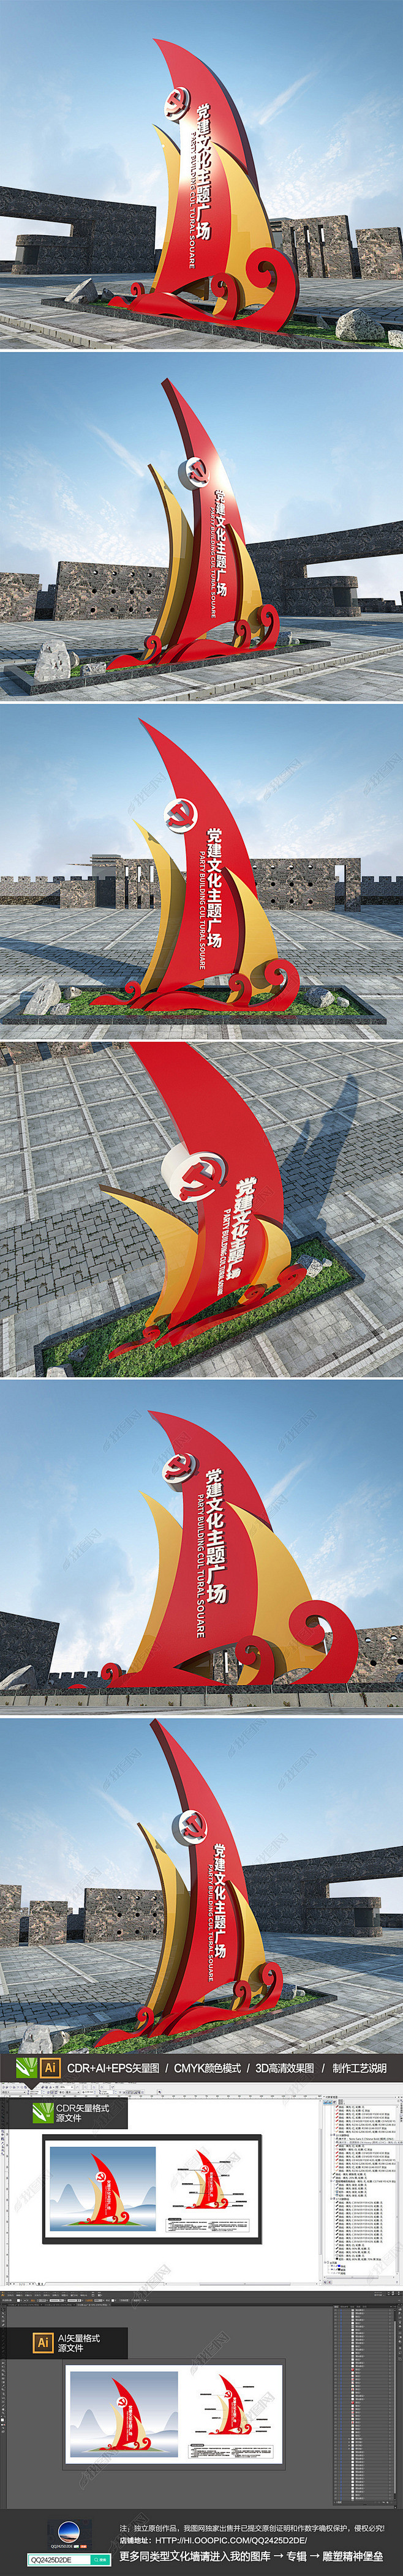 帆船创意党建文化主题广场公园雕塑标识牌